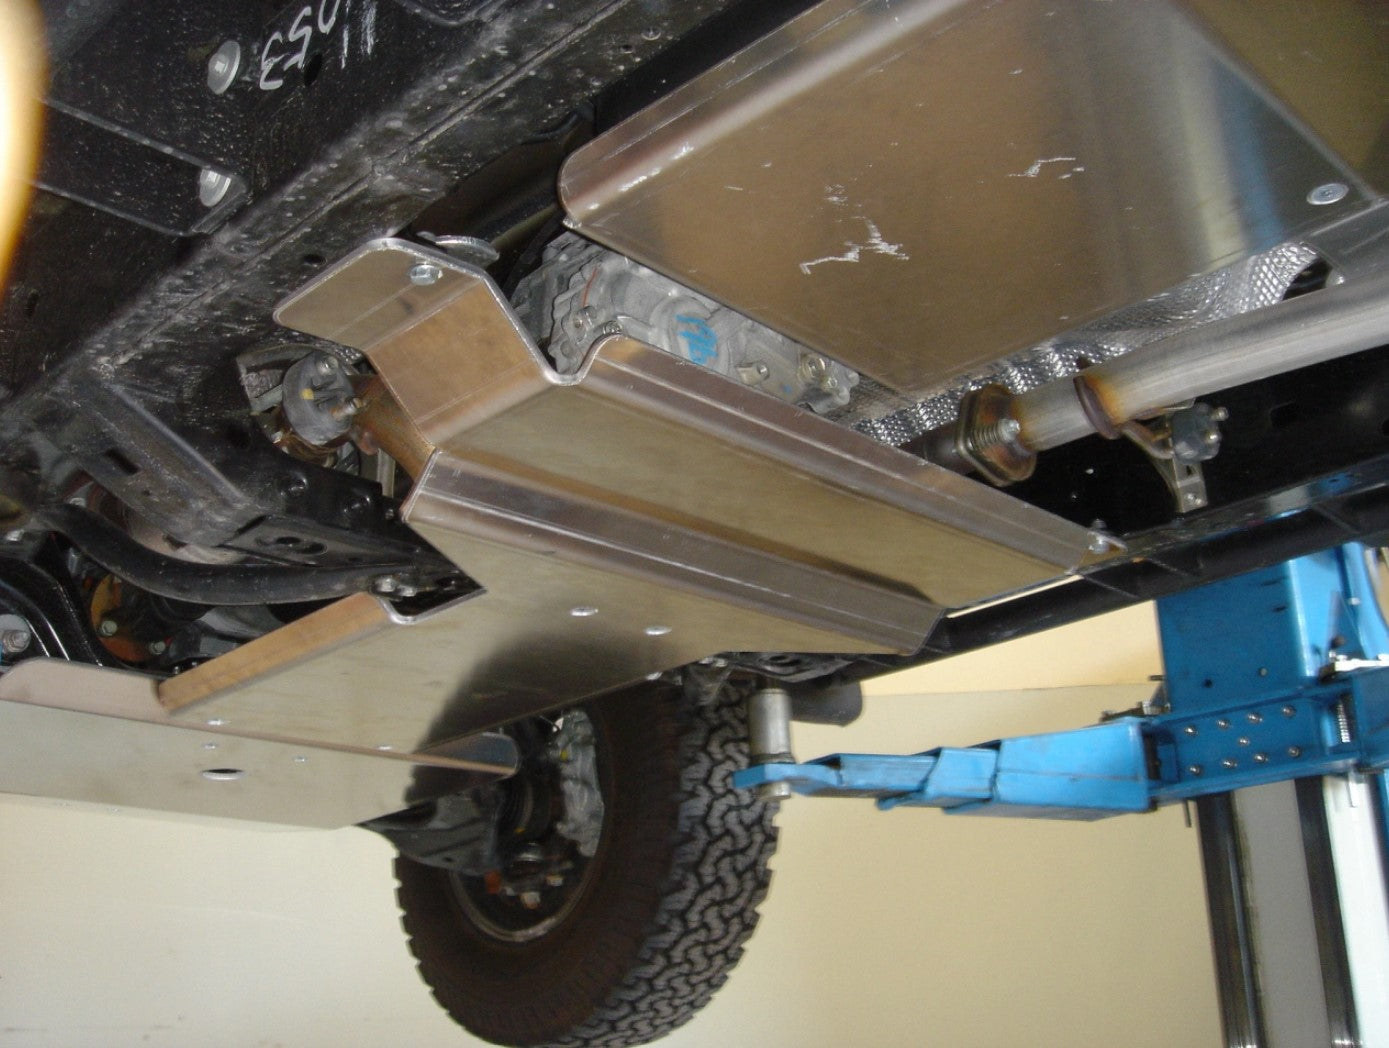 vue latérale du dessous d'un véhicule avec des plaques de protection alu